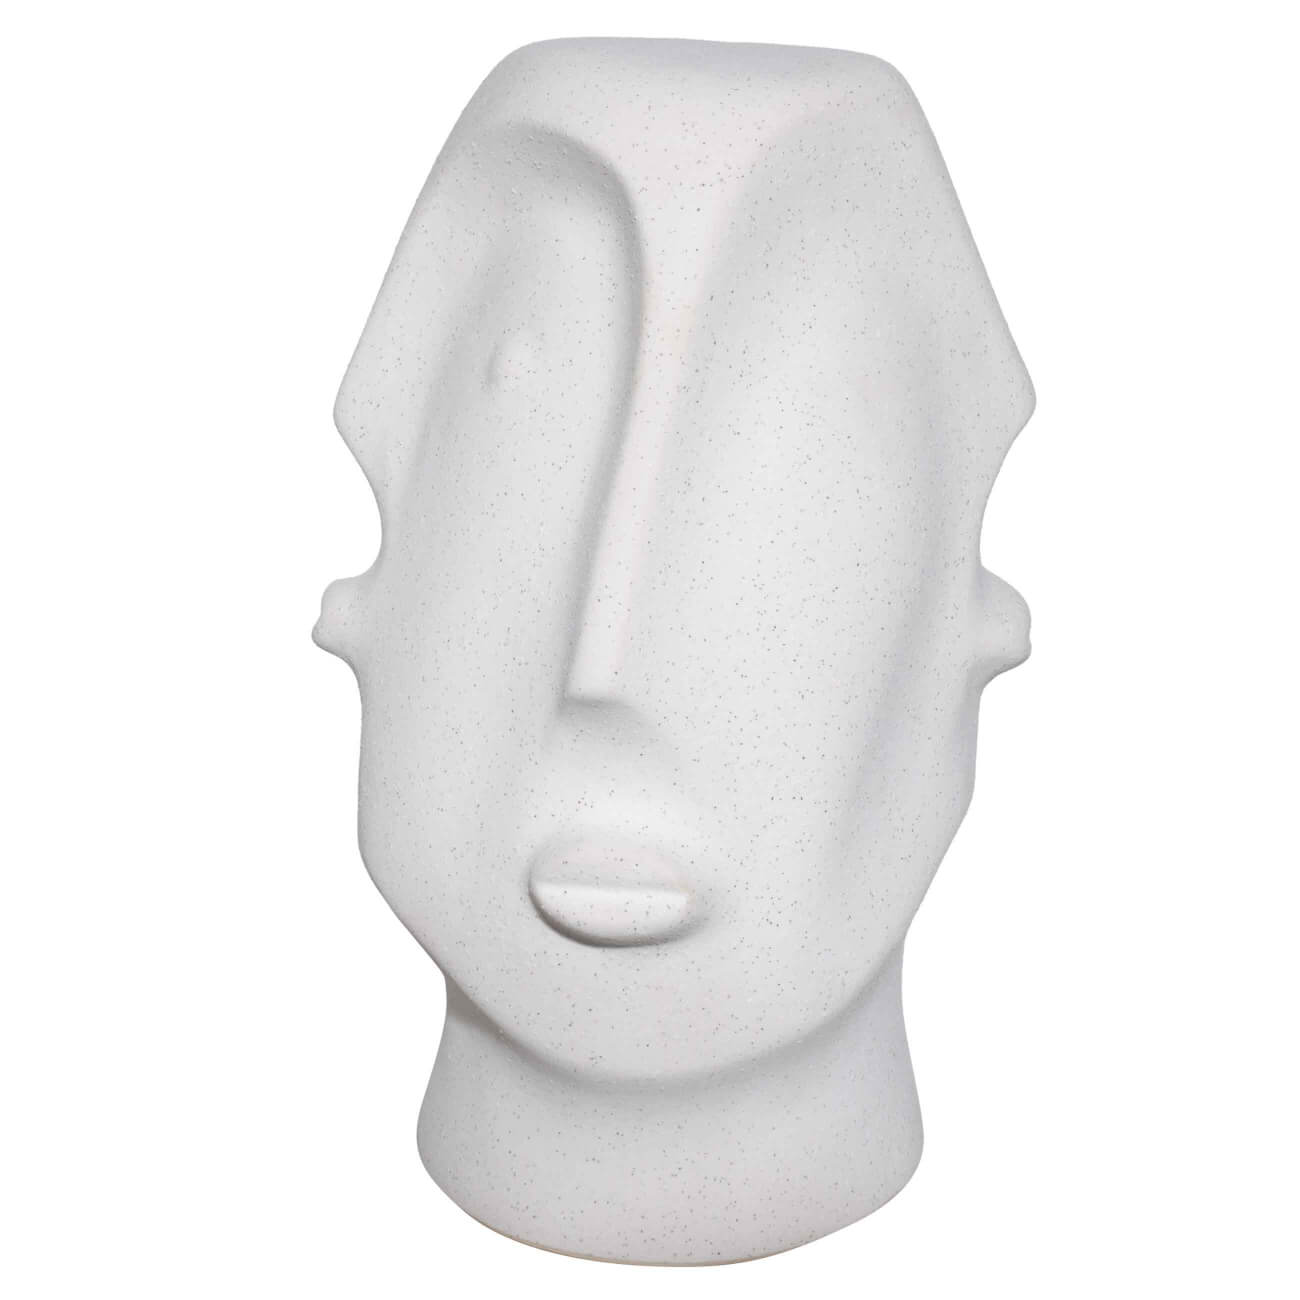 Статуэтка, 31 см, керамика, молочная, в крапинку, Лица, Faces статуэтка женщина сидит на боку